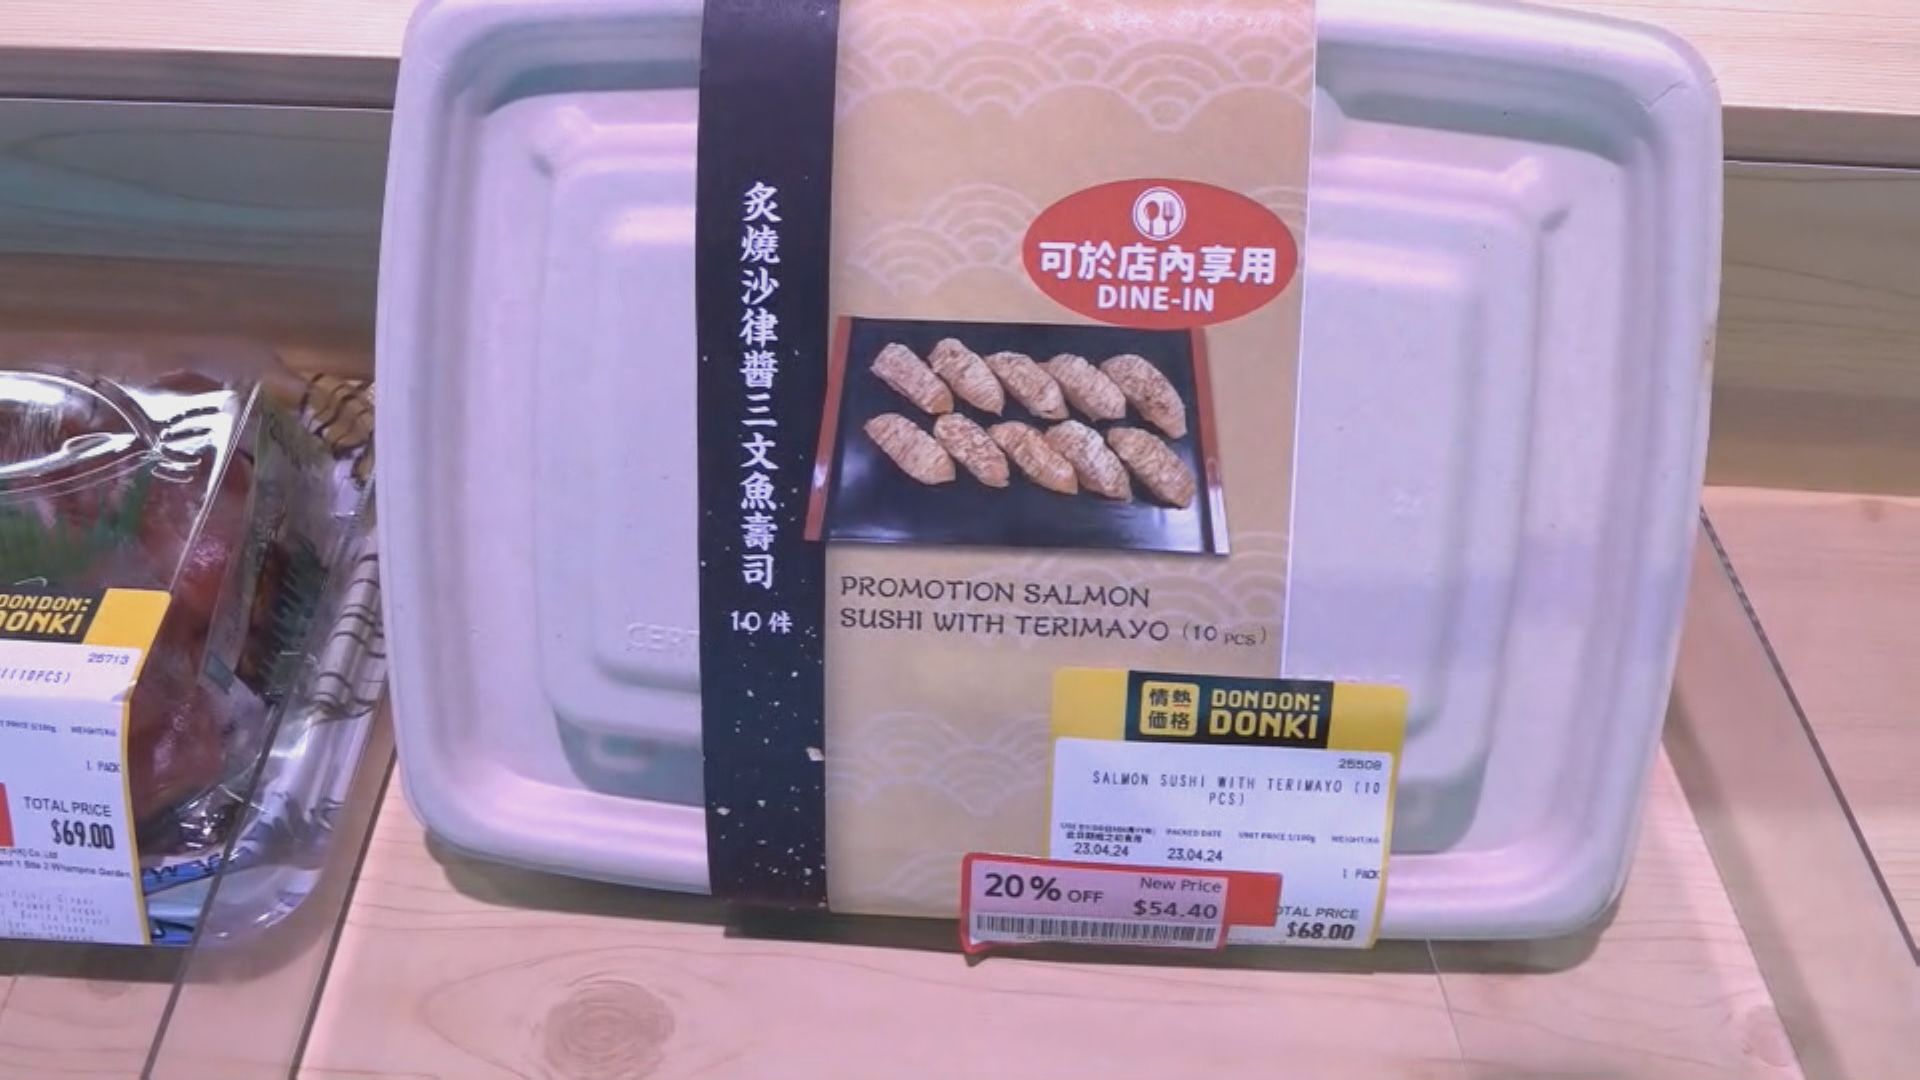 有超市轉用紙盒包裝壽司 業界認為會影響生意